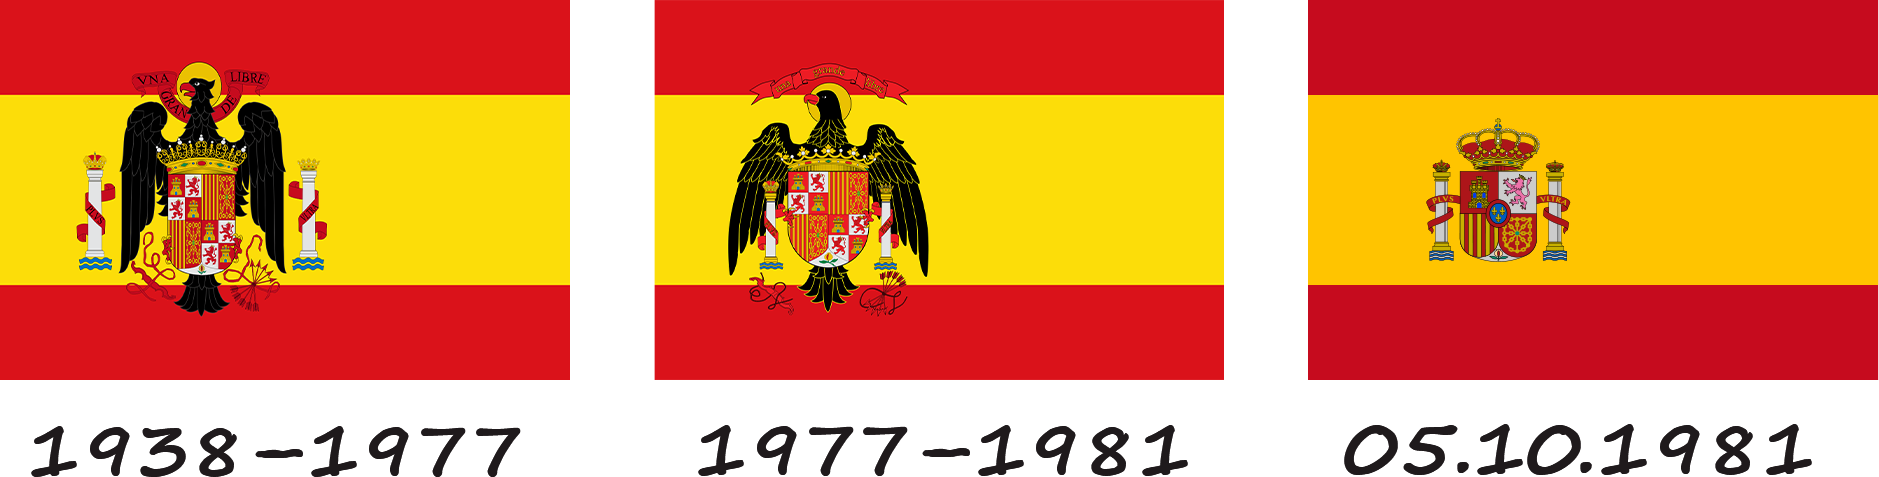 Історія прапору Іспанії